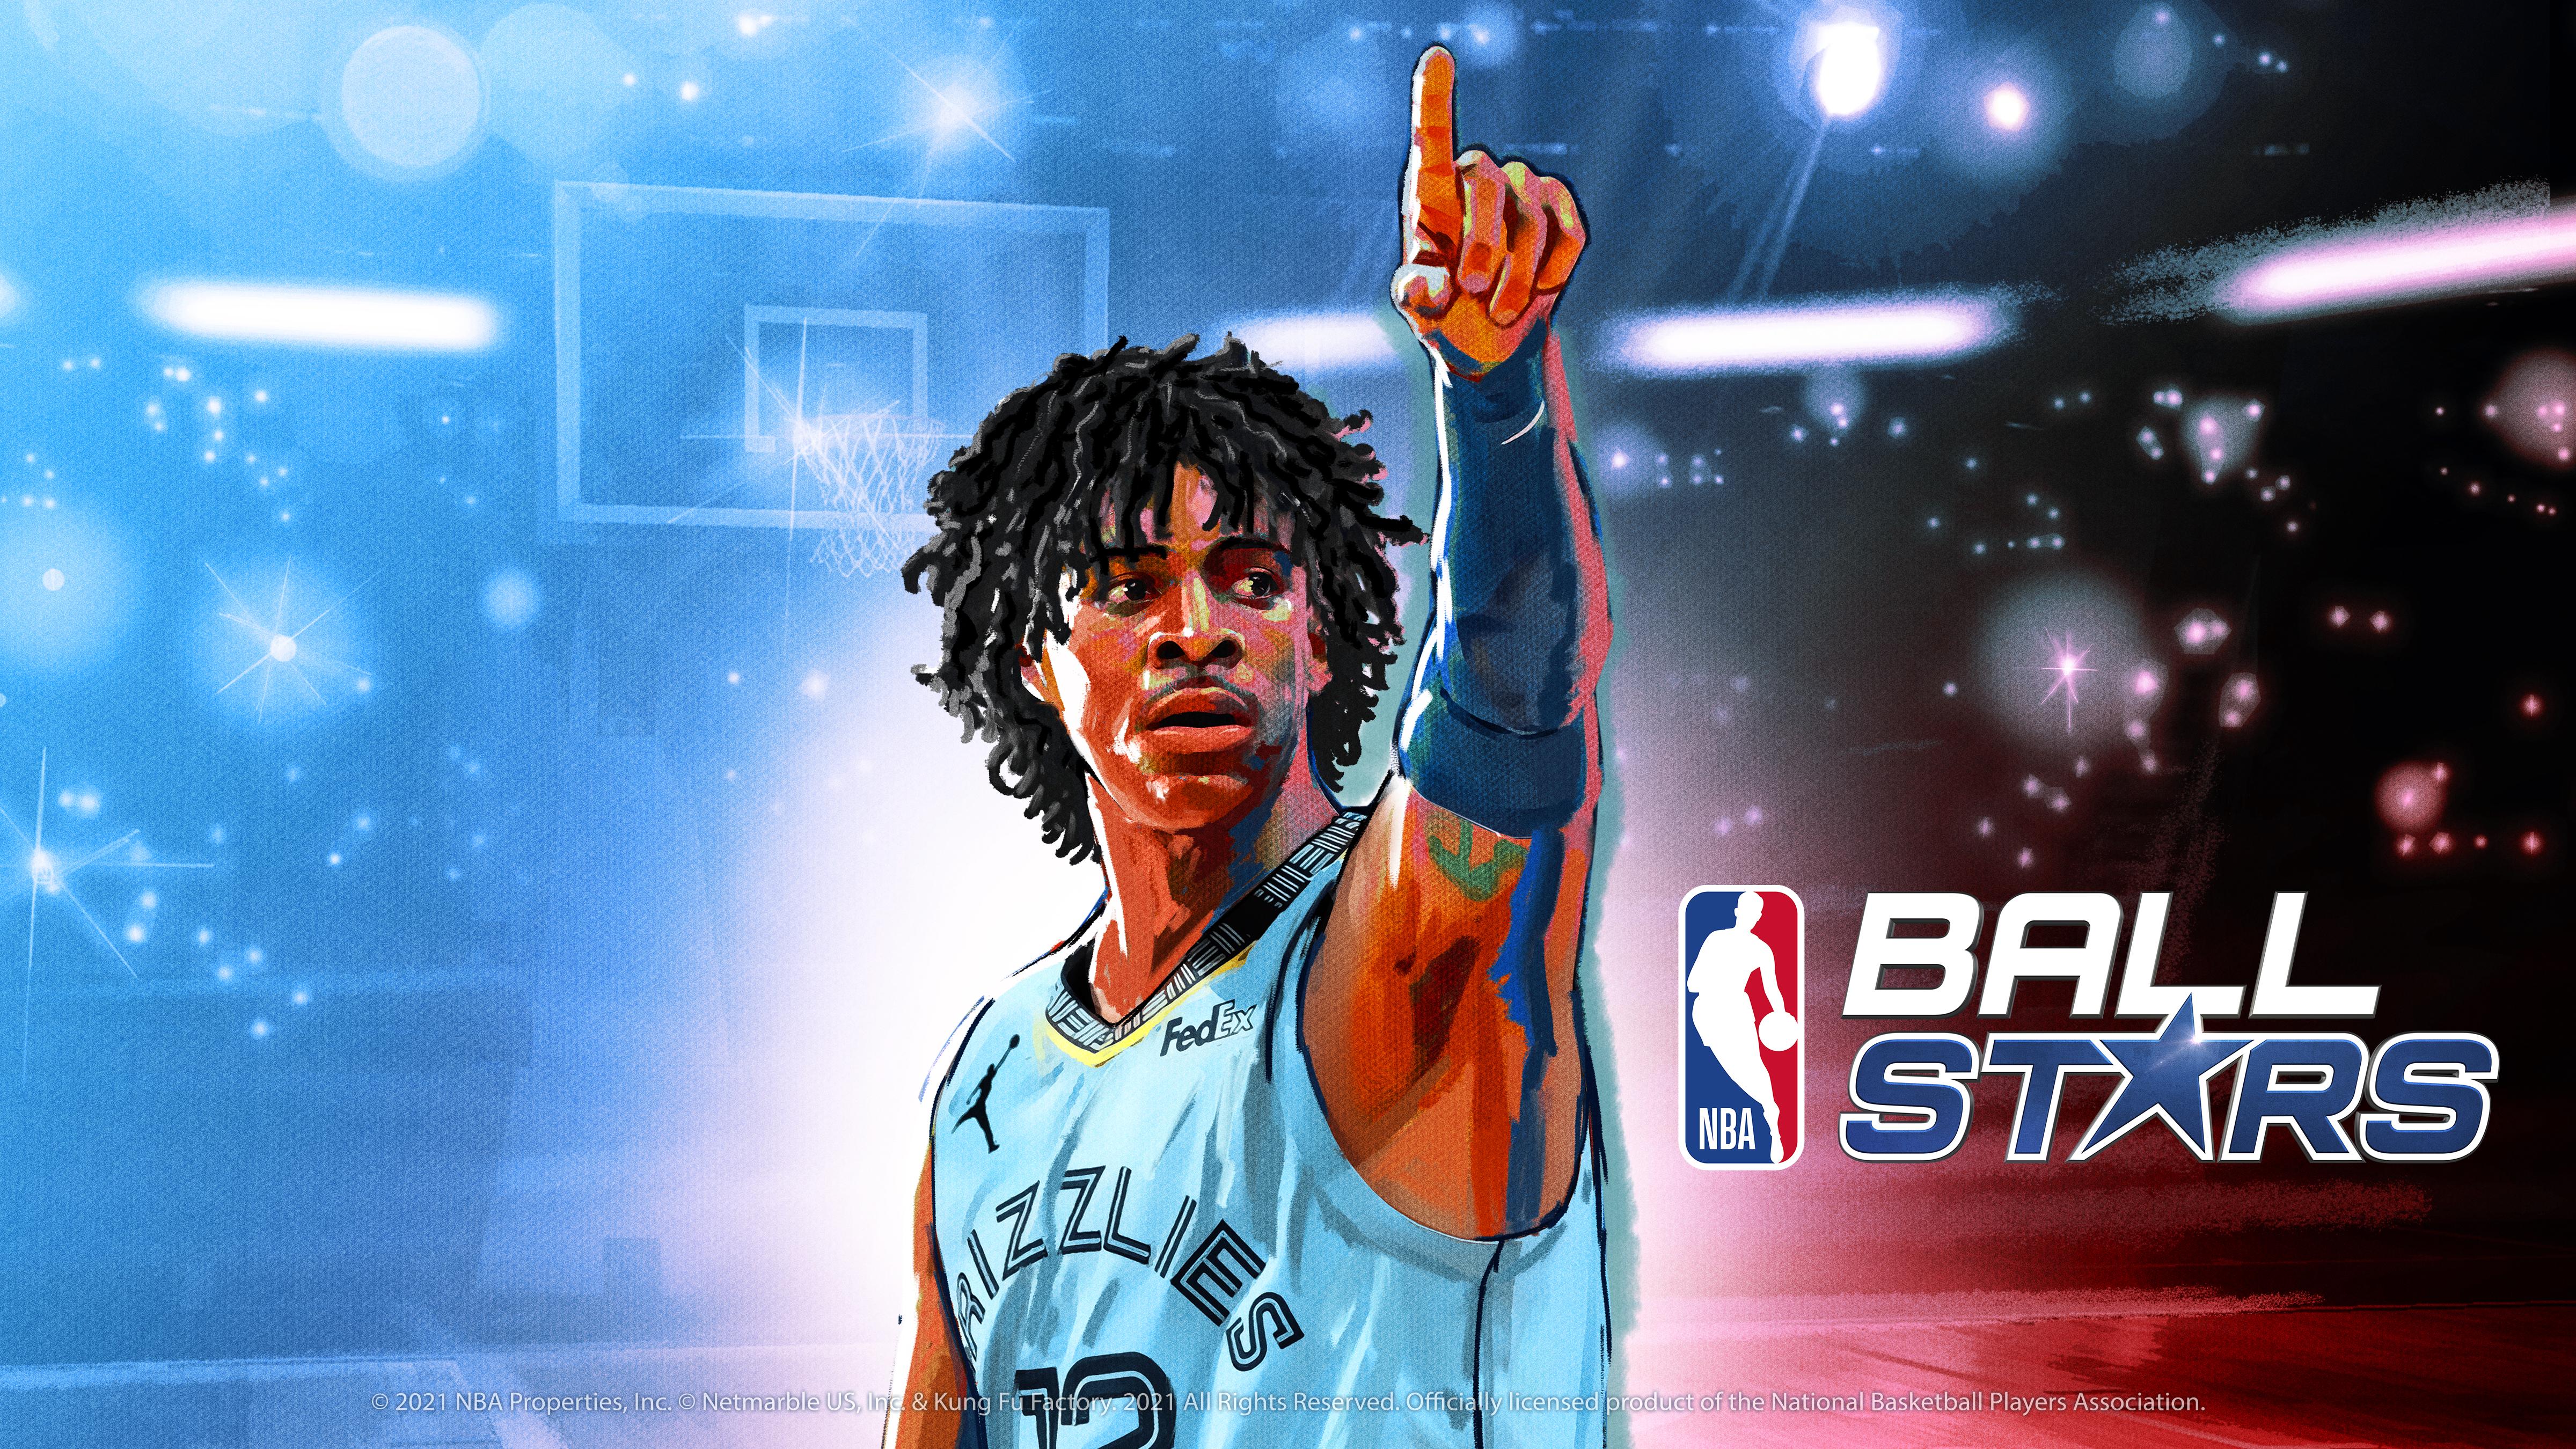 ネットマーブルとカンフーファクトリーが贈る 新しいパズルベースのバスケットボールゲーム Nba Ball Stars 事前登録開始 ネットマーブルのプレスリリース